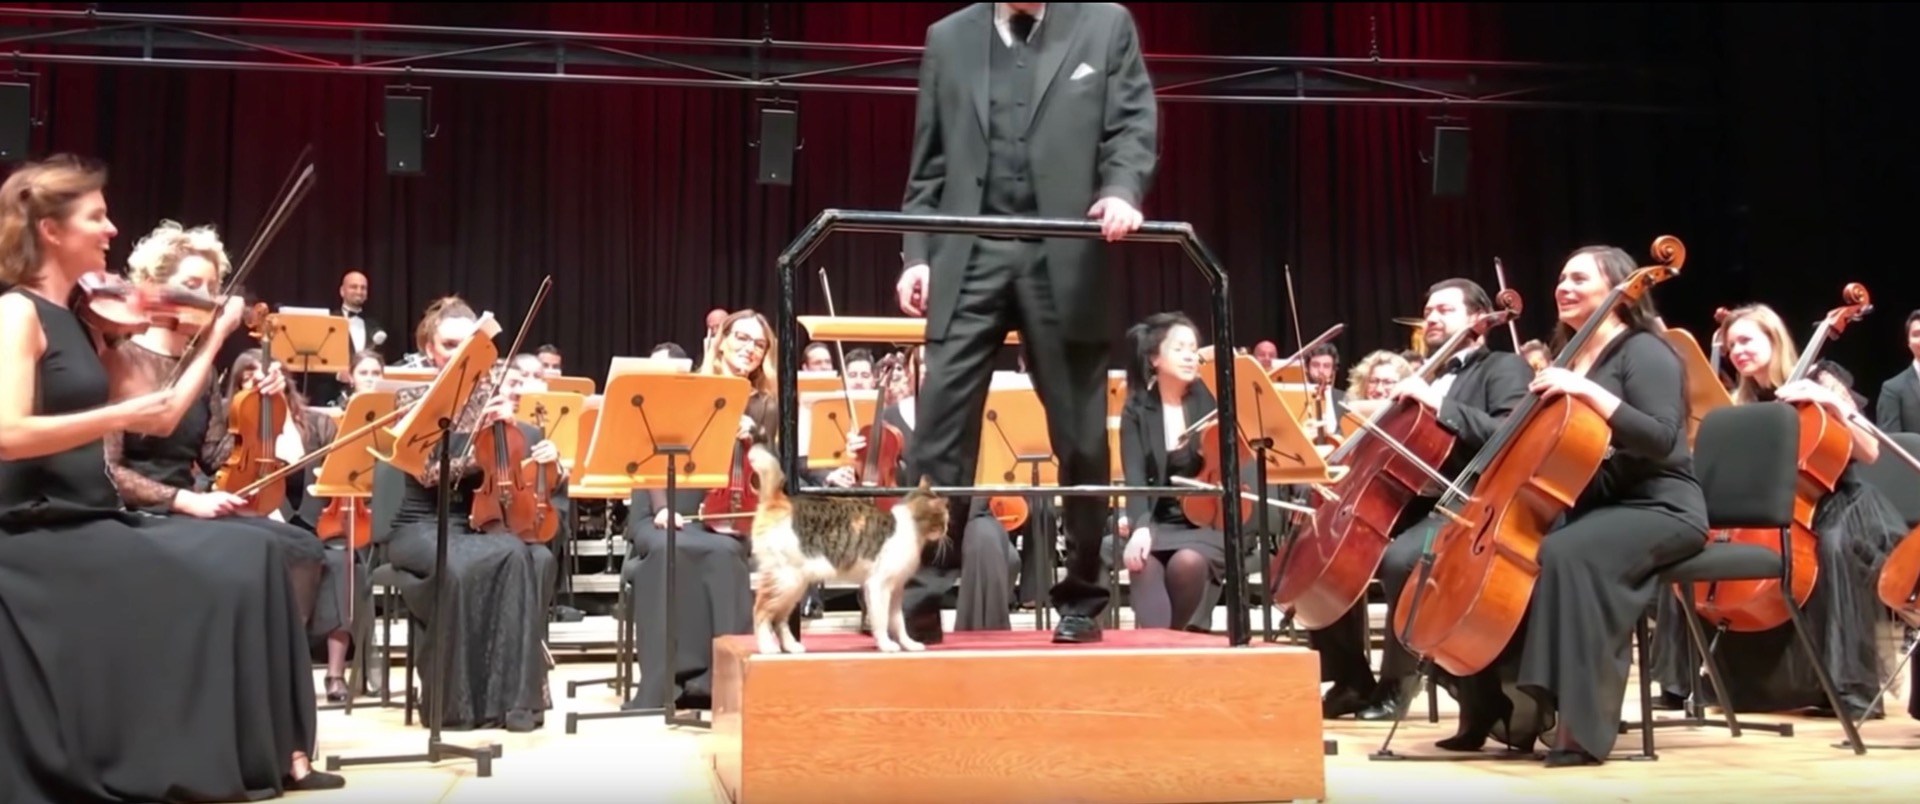 オーケストラの指揮台に跳び乗る三毛の猫、観客哄堂拍手喝采